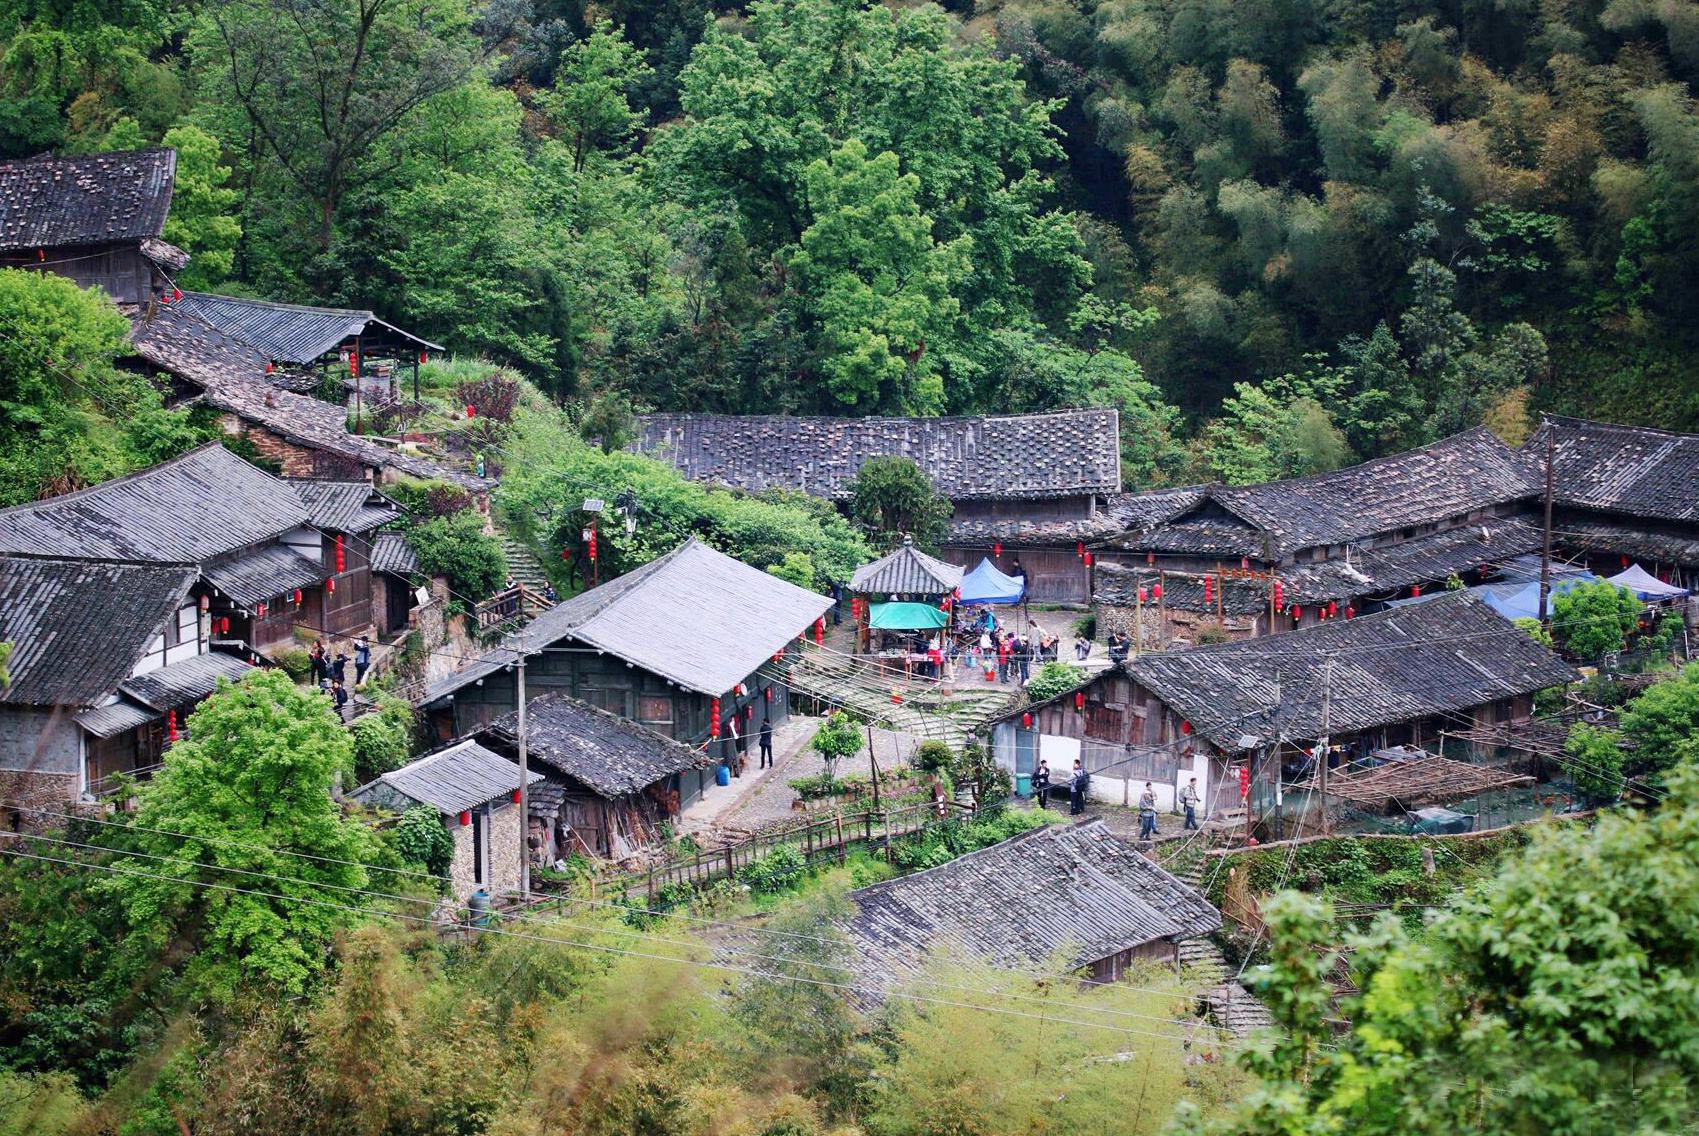 中国最古怪的村子,房屋建造不用砖瓦,竟全部